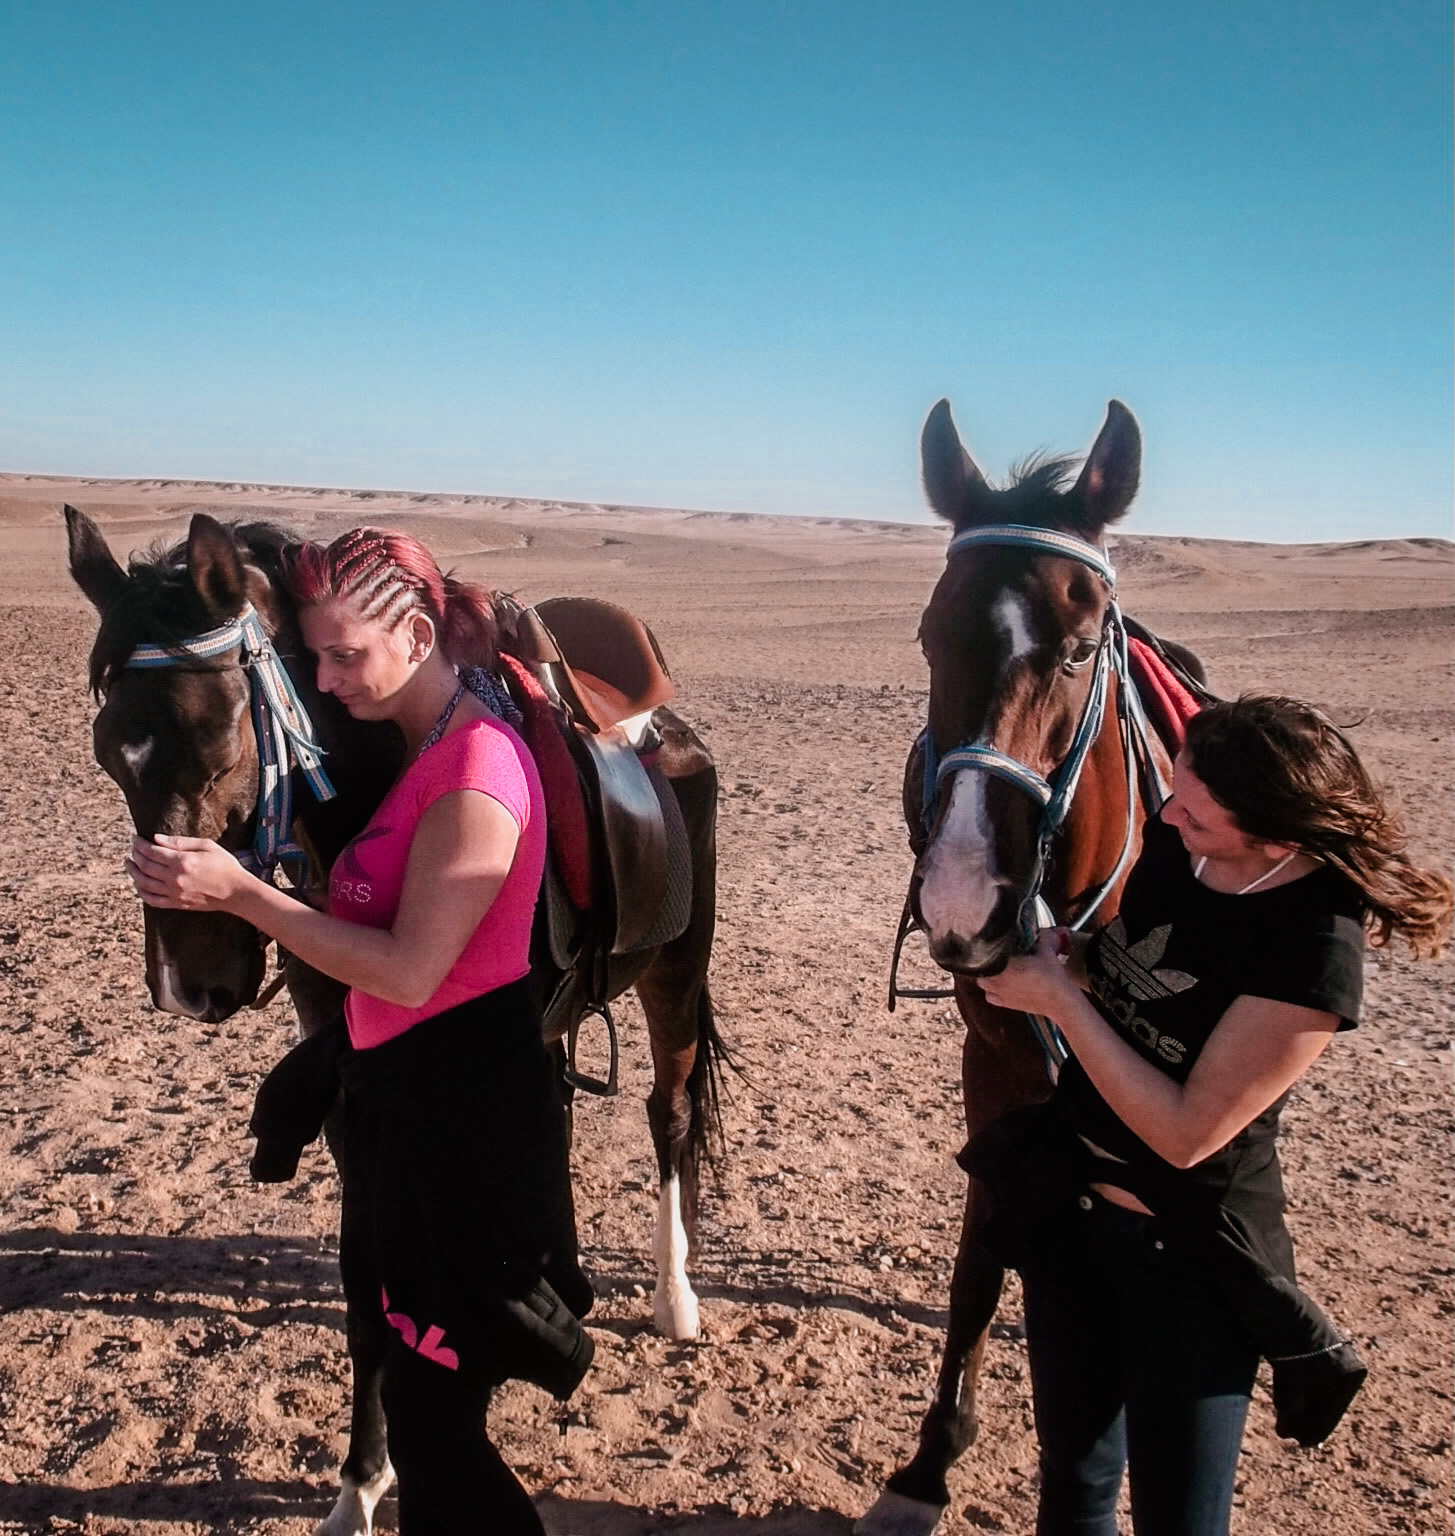 Bloginhaberin Jacky und ihre Schwester mit Pferden in der Wüste in Ägypten